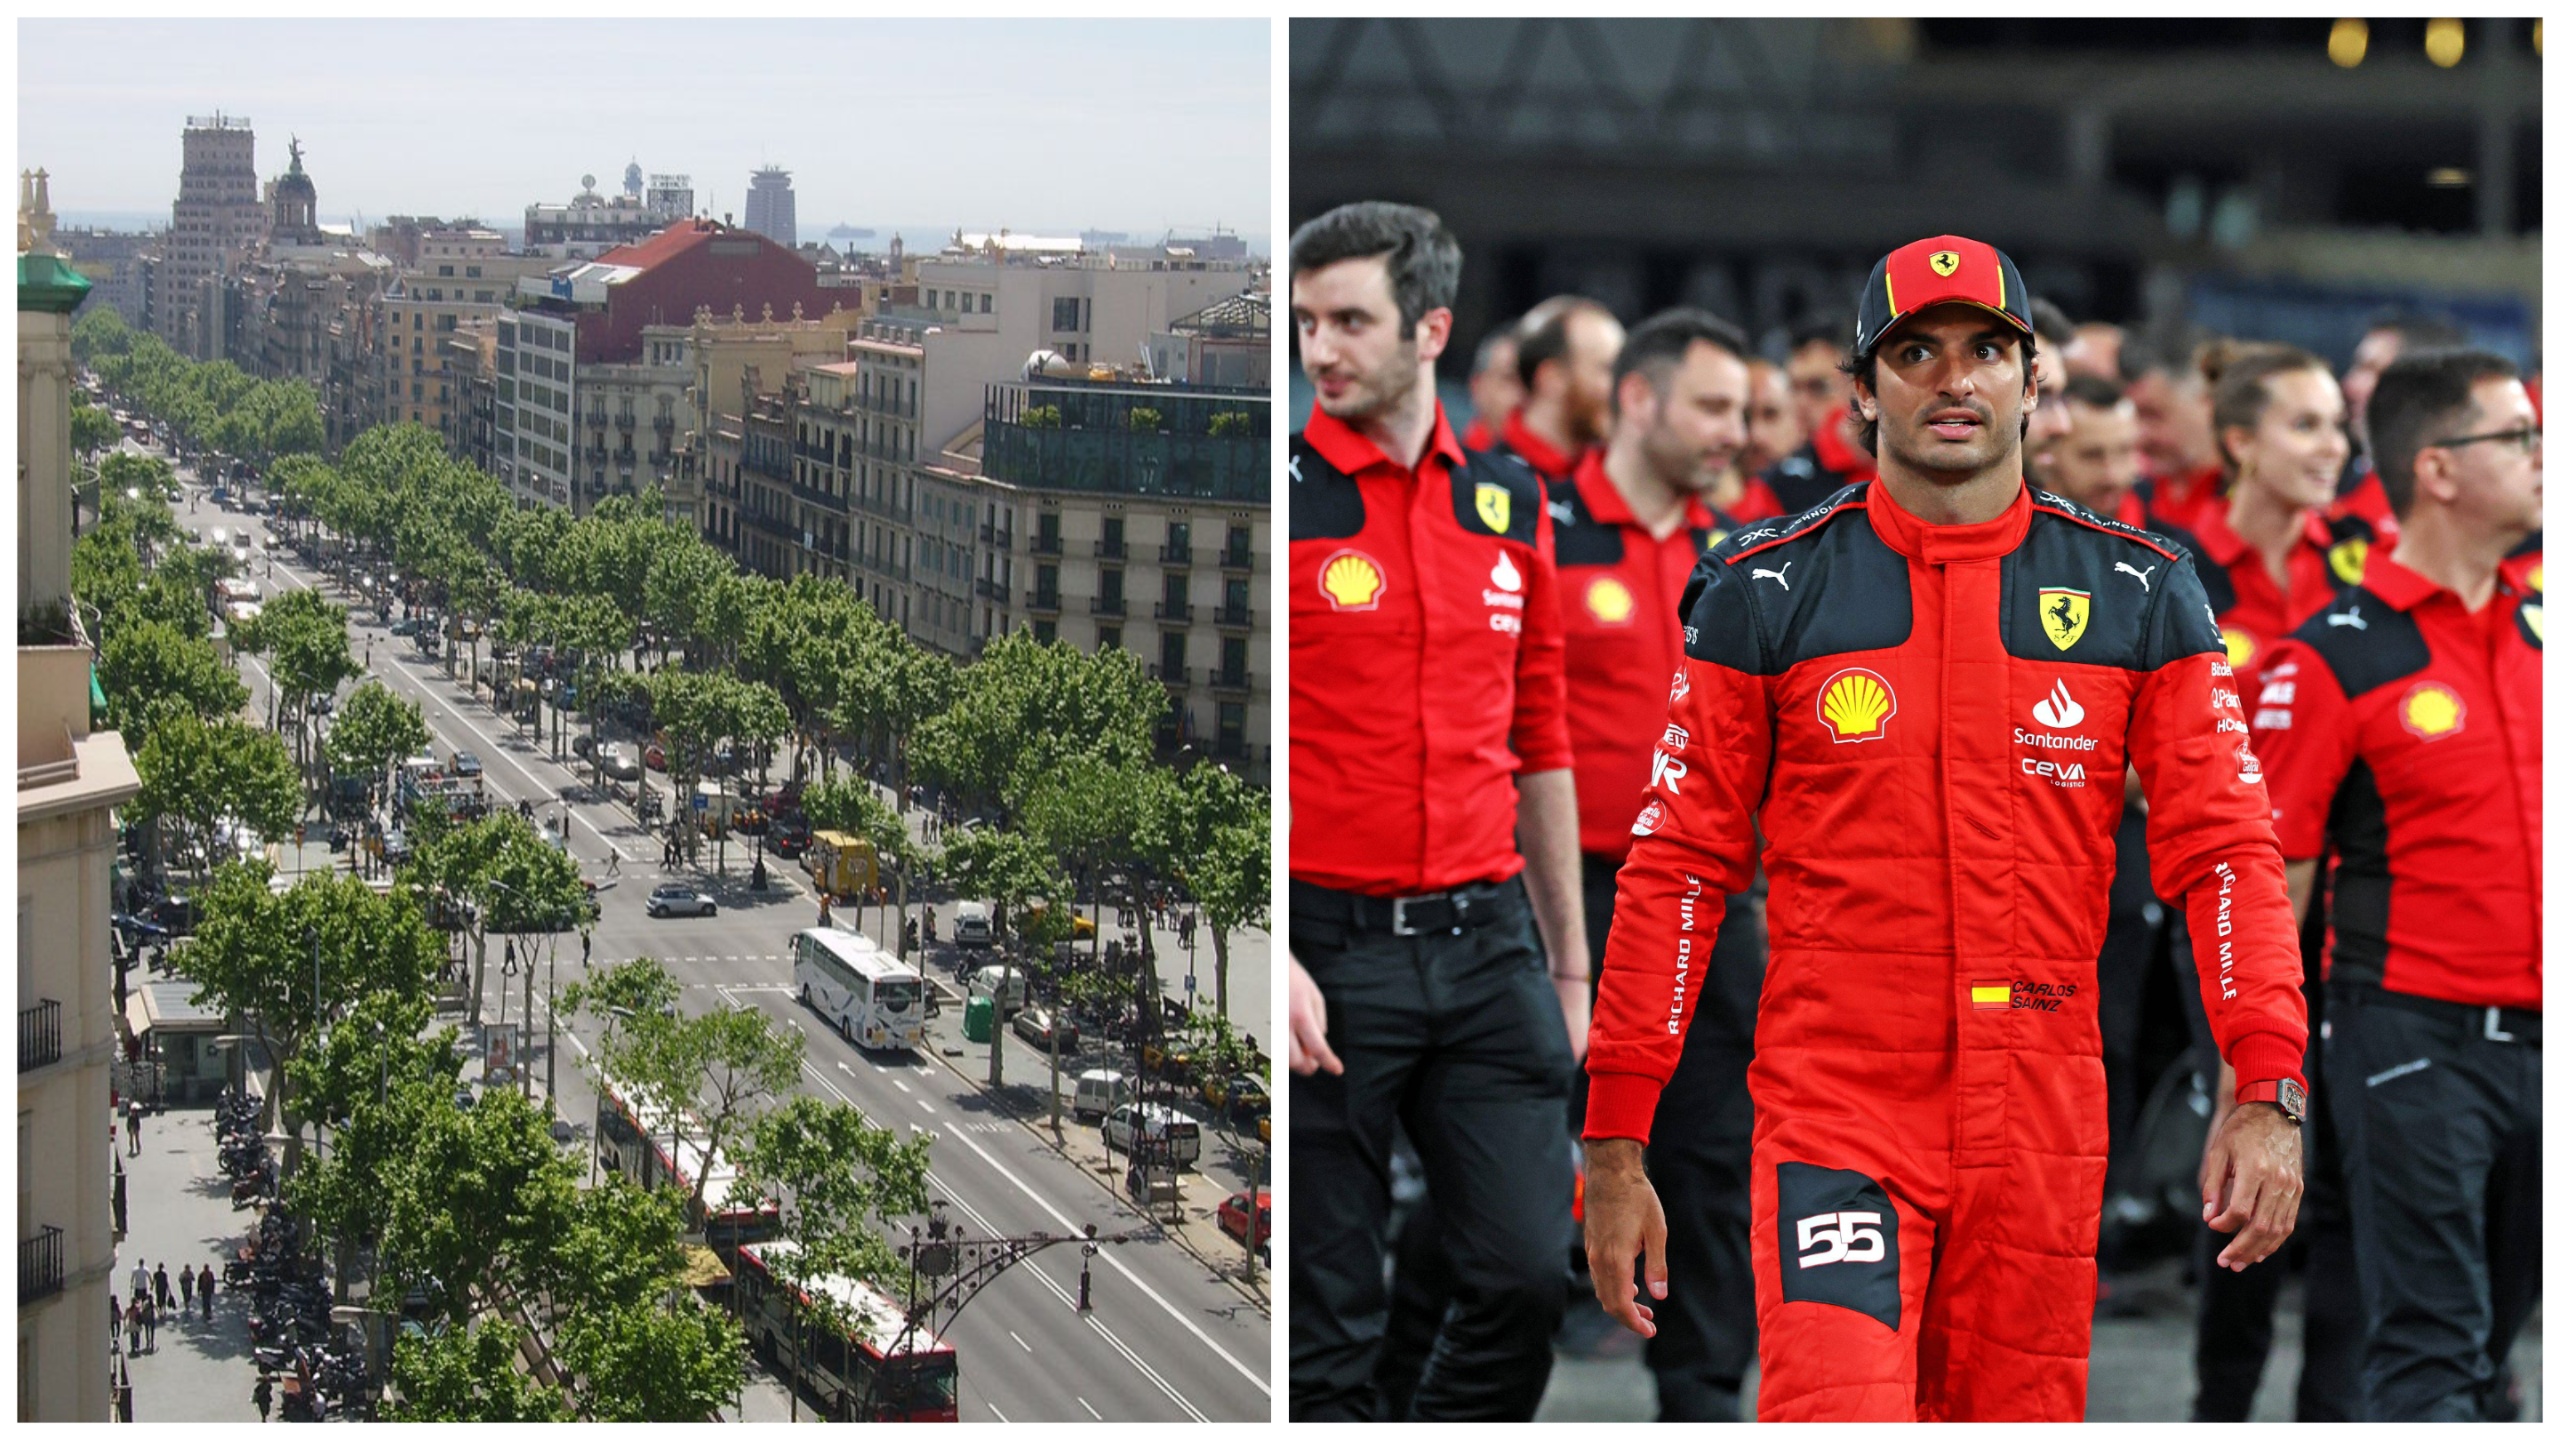 Fila de Fórmula 1 en España: los ecologistas critican los planes de exhibir coches deportivos en las calles de Barcelona antes del Gran Premio de junio